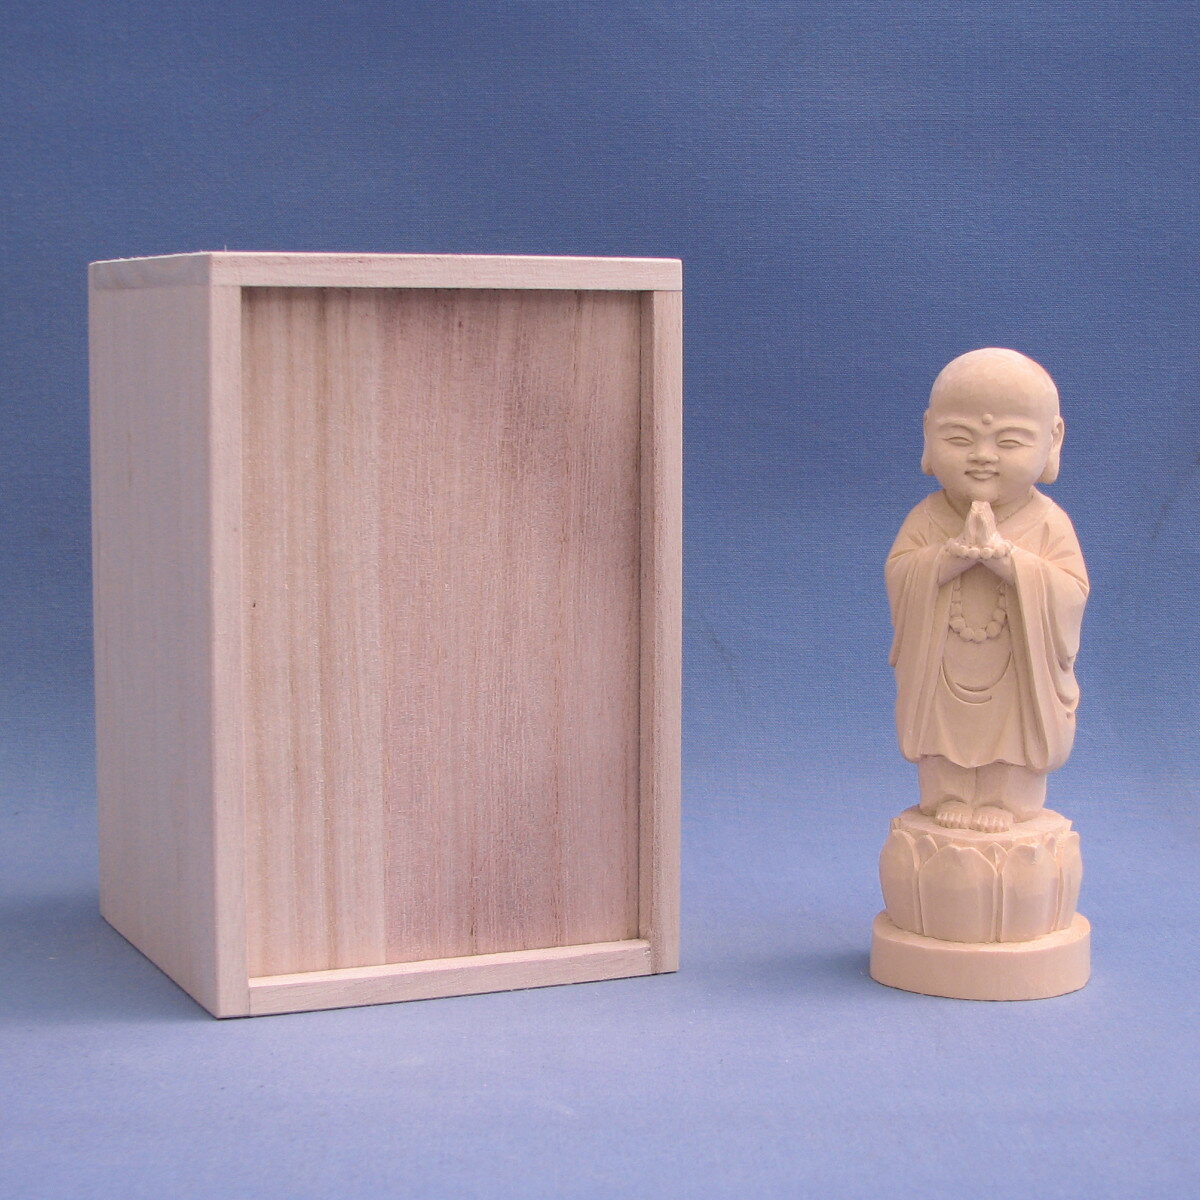 木彫仏像 子育地蔵(合掌形) 16cm桧木 半額でGETできるお得 楽器、手芸、コレクション